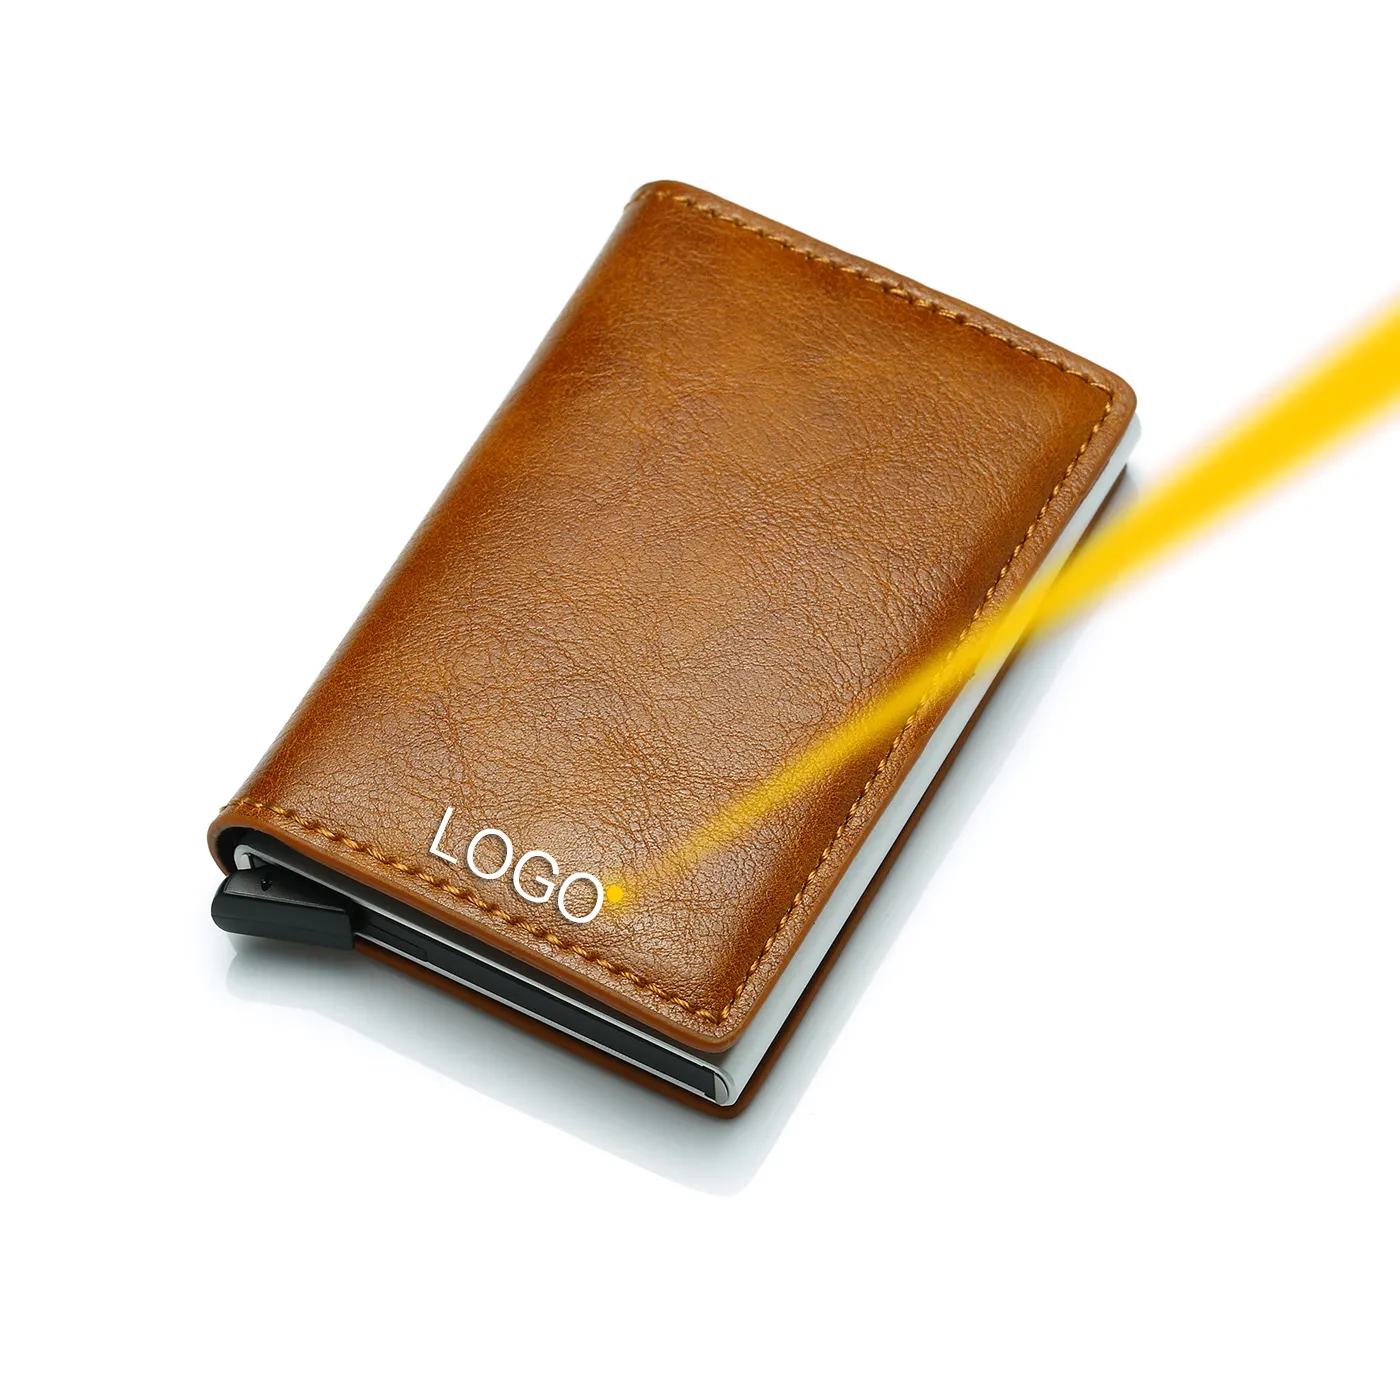 Free Sample Custom Logo Pop Up Cardholder PU Leather Metal RFID Wallet Credit Card Holder